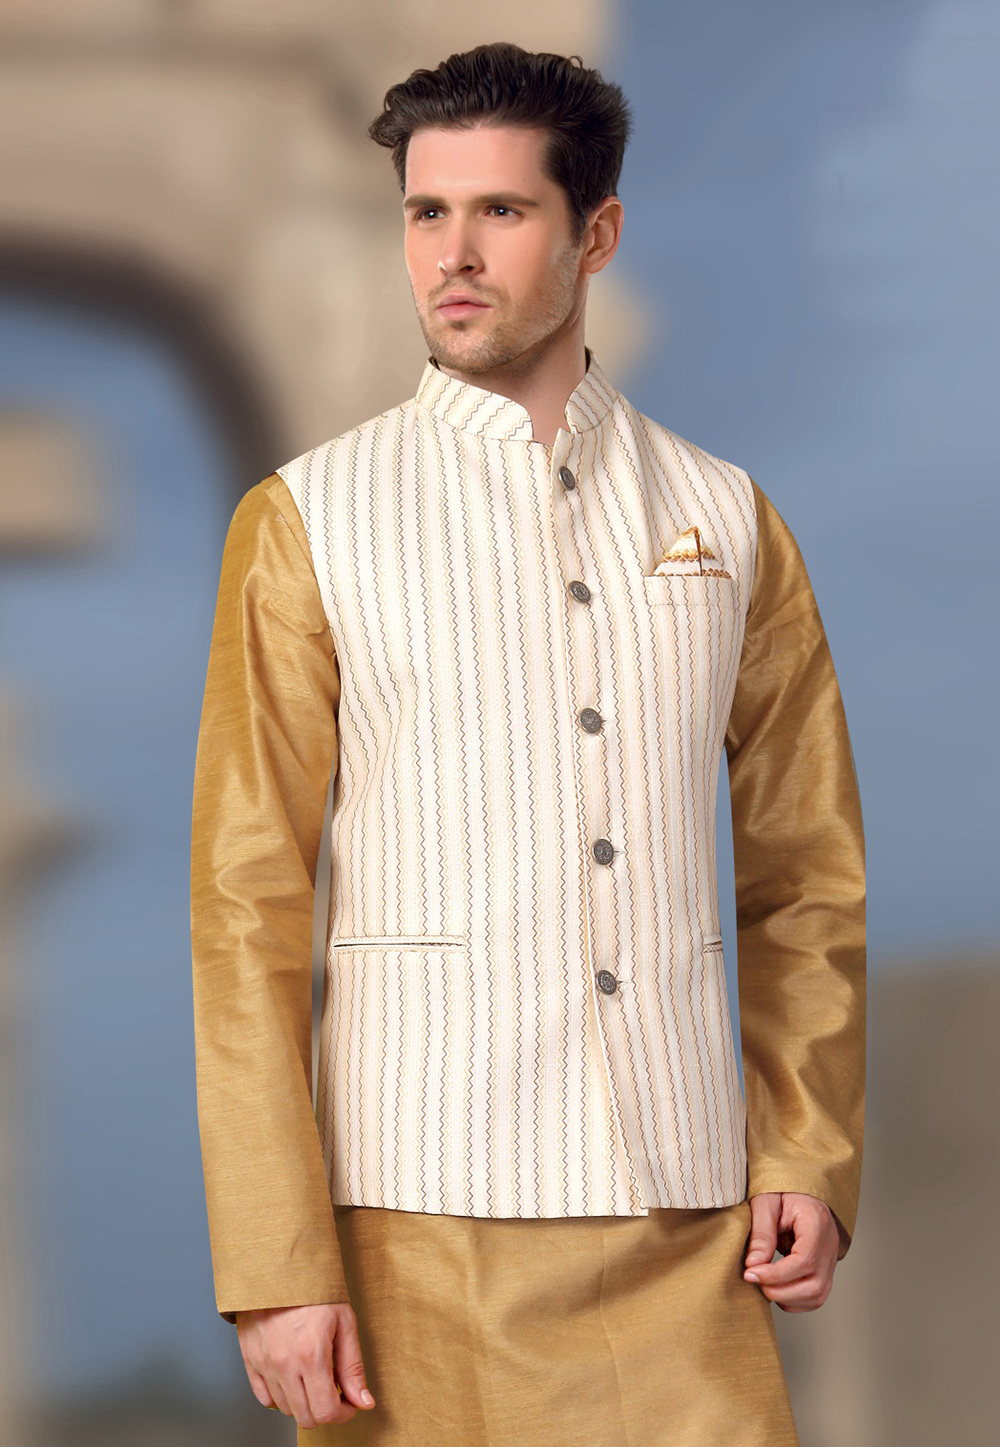 Buy Embossed Slim Fit Nehru Jacket Online at Best Prices in India - JioMart.